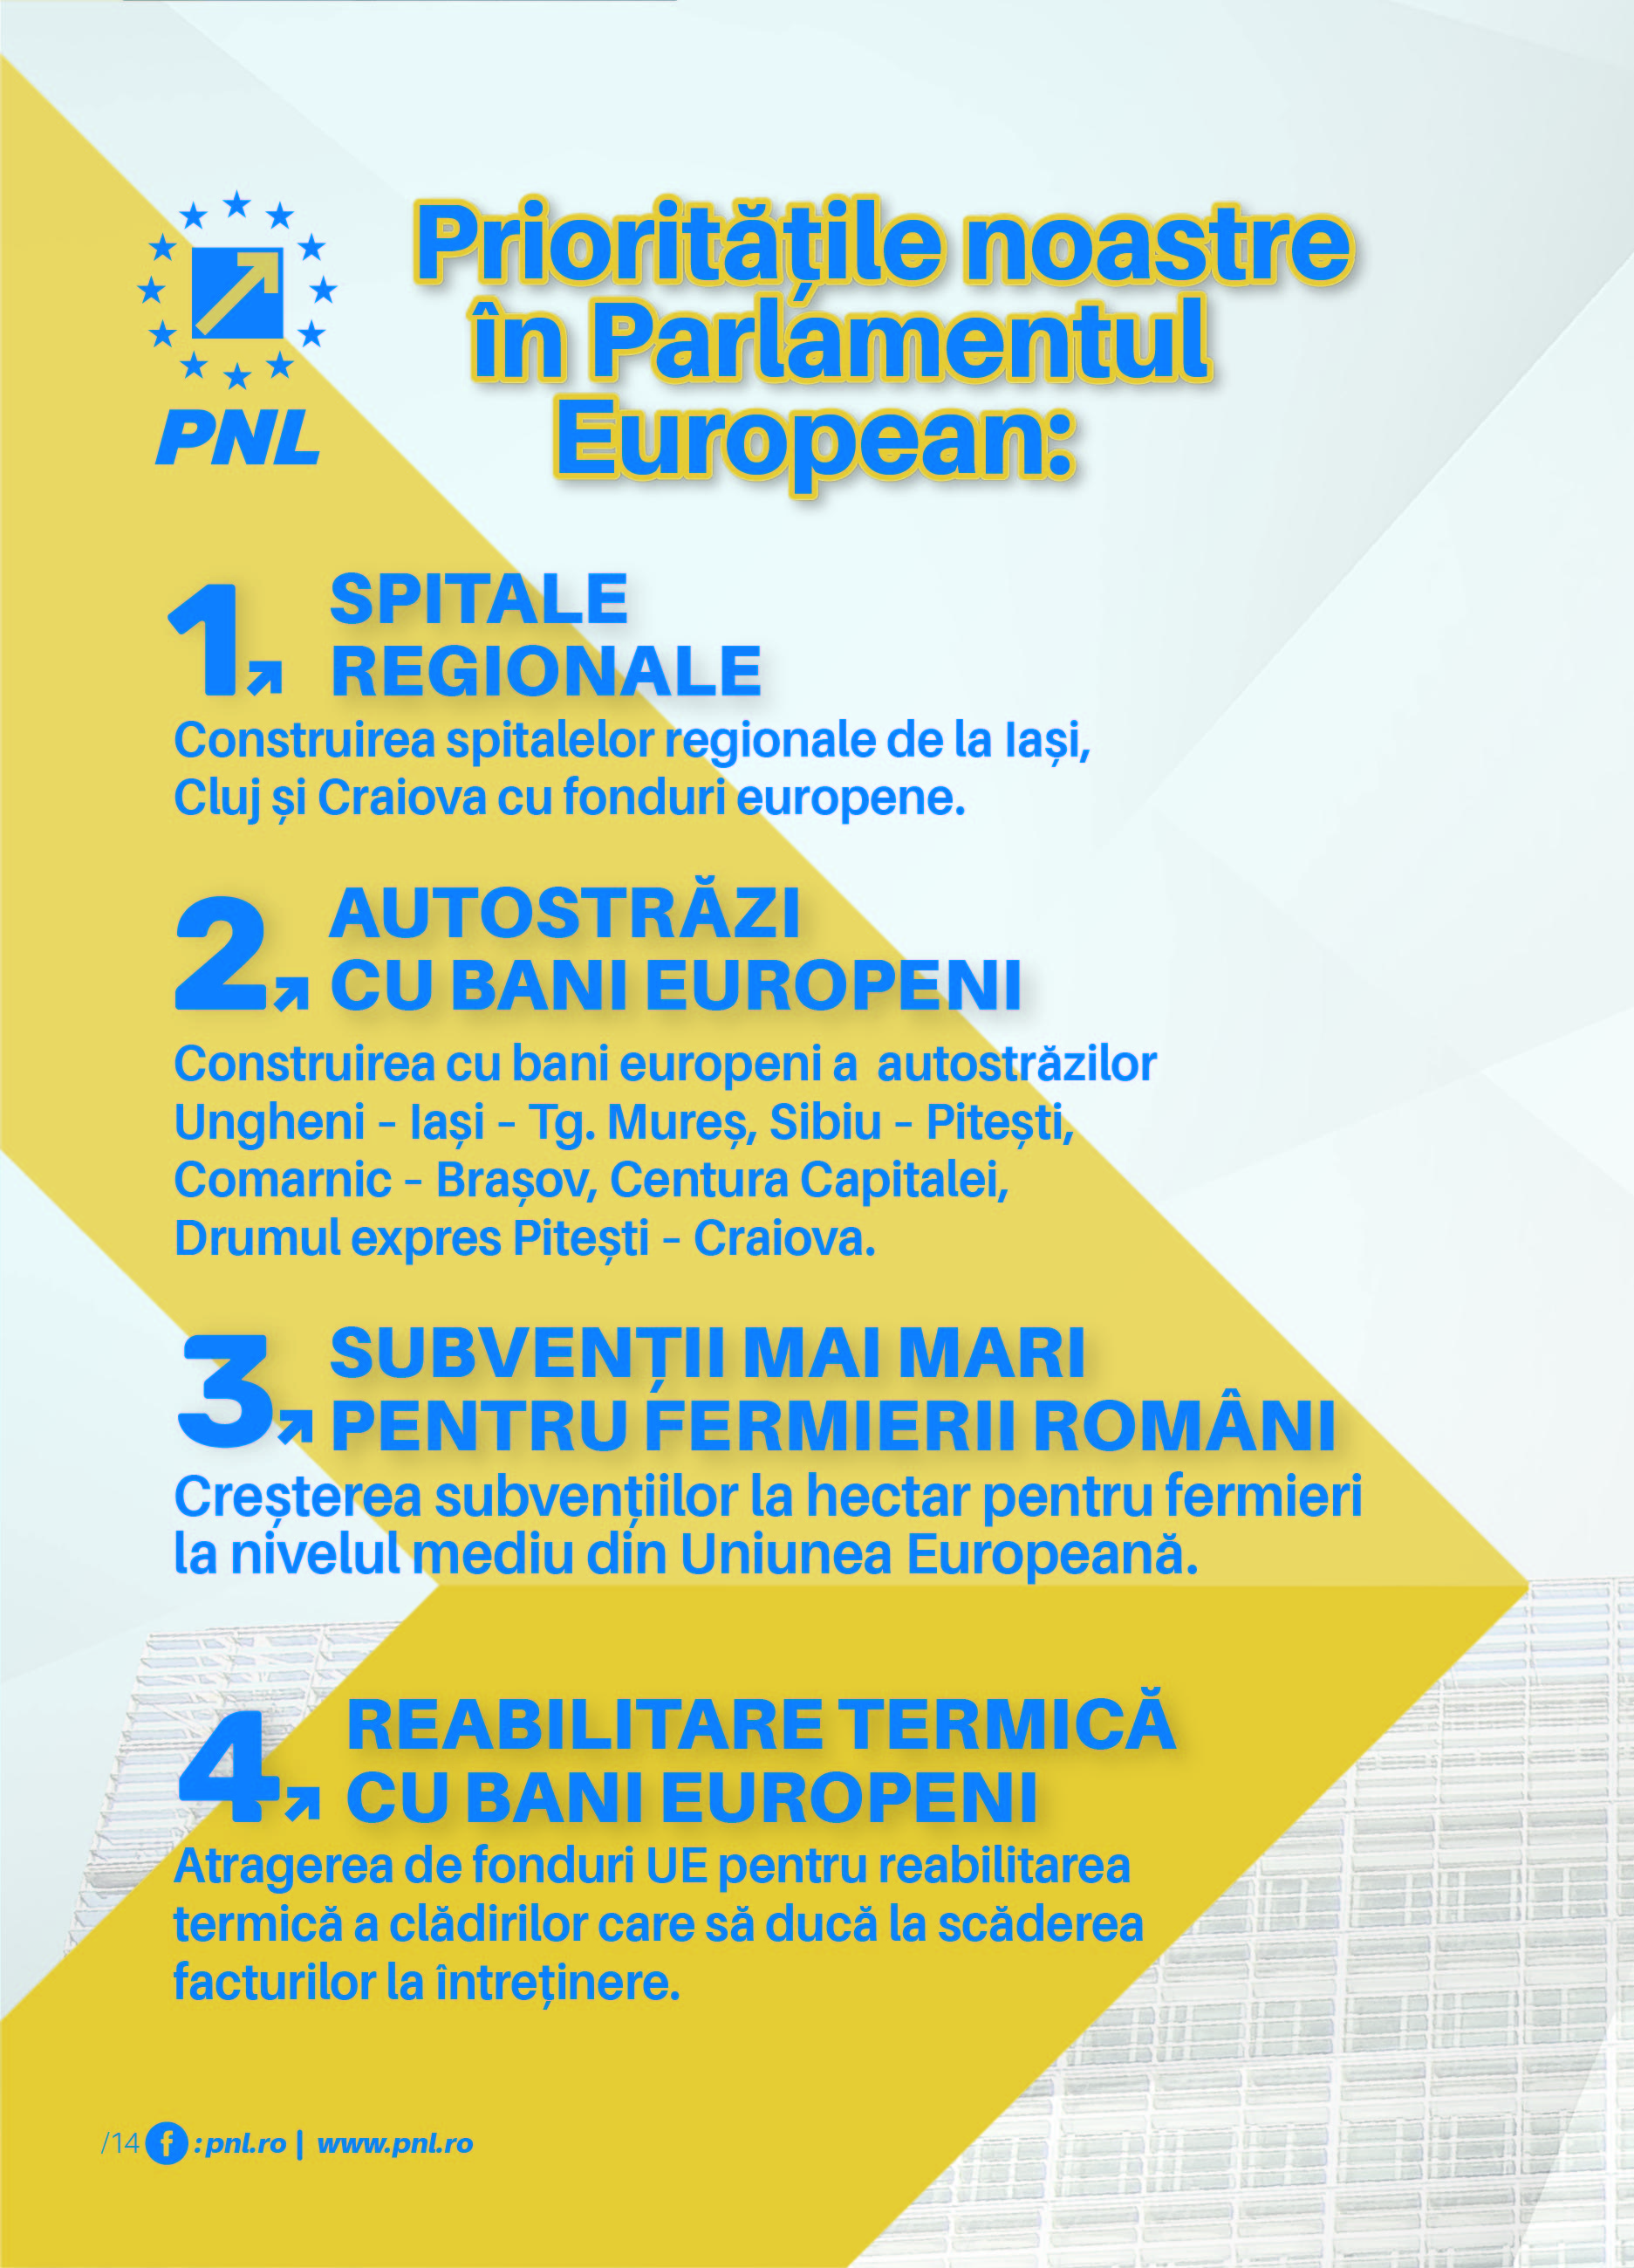 PRIORITĂȚILE P.N.L. ÎN PARLAMENTUL EUROPEAN (P)